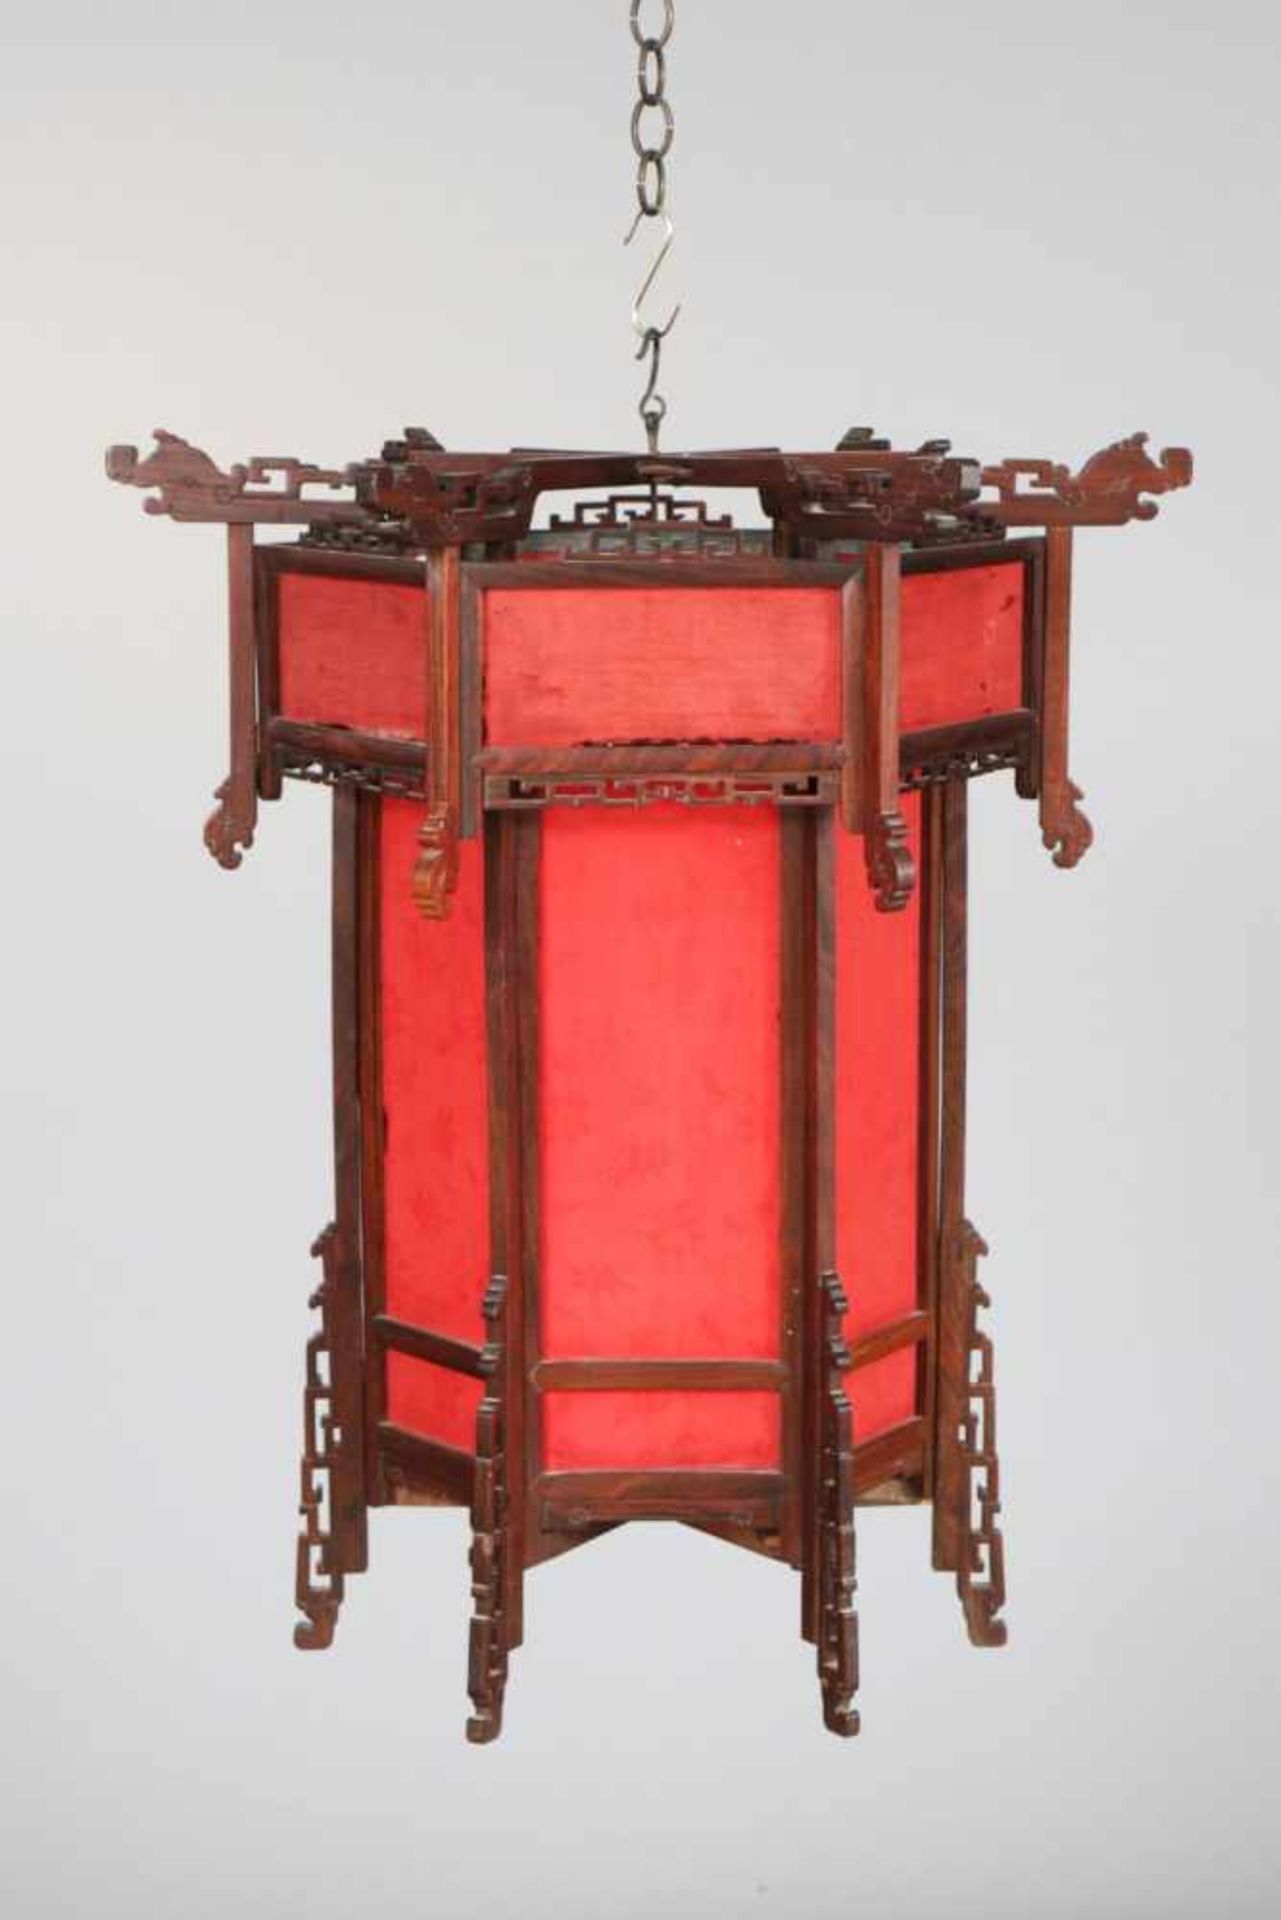 Chinesische Laternewohl um 1920, hektagonaler Rosenholz-Rahmen, mit roter Seide bespannt (feines